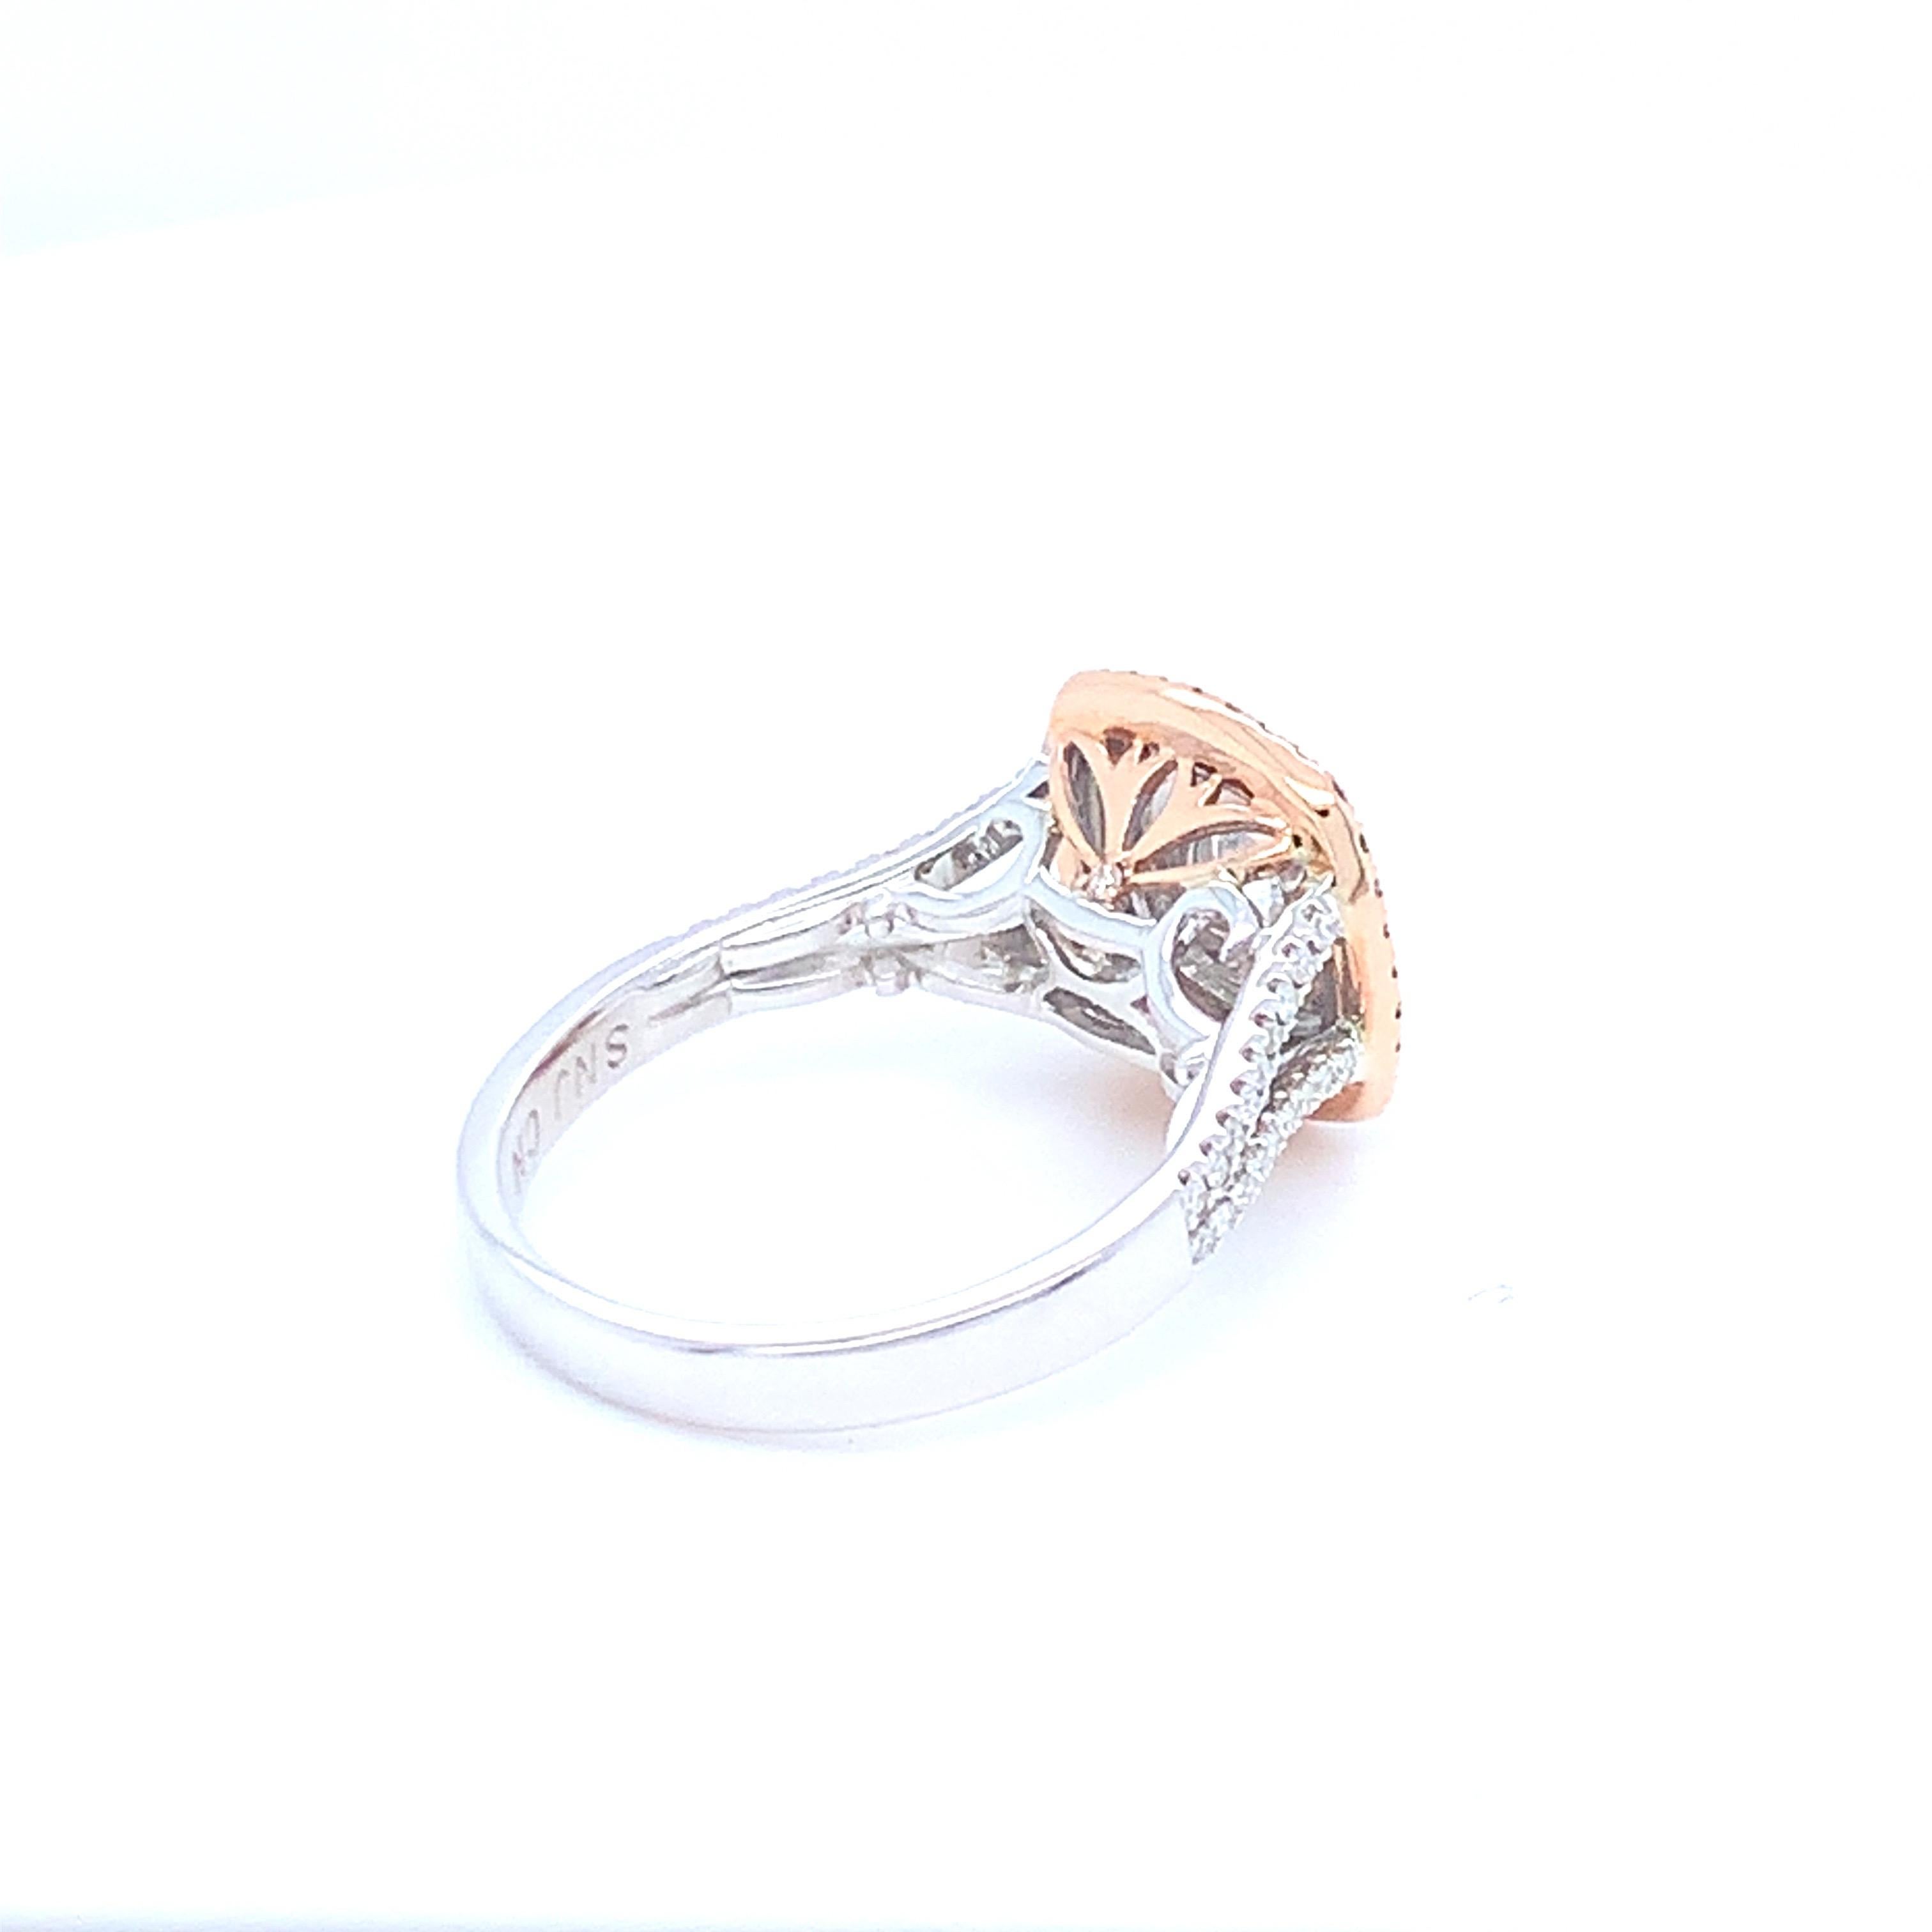 0.58 Carat White Round Diamond Pink Diamond Halo Ring Set in 14 Karat Gold For Sale 2